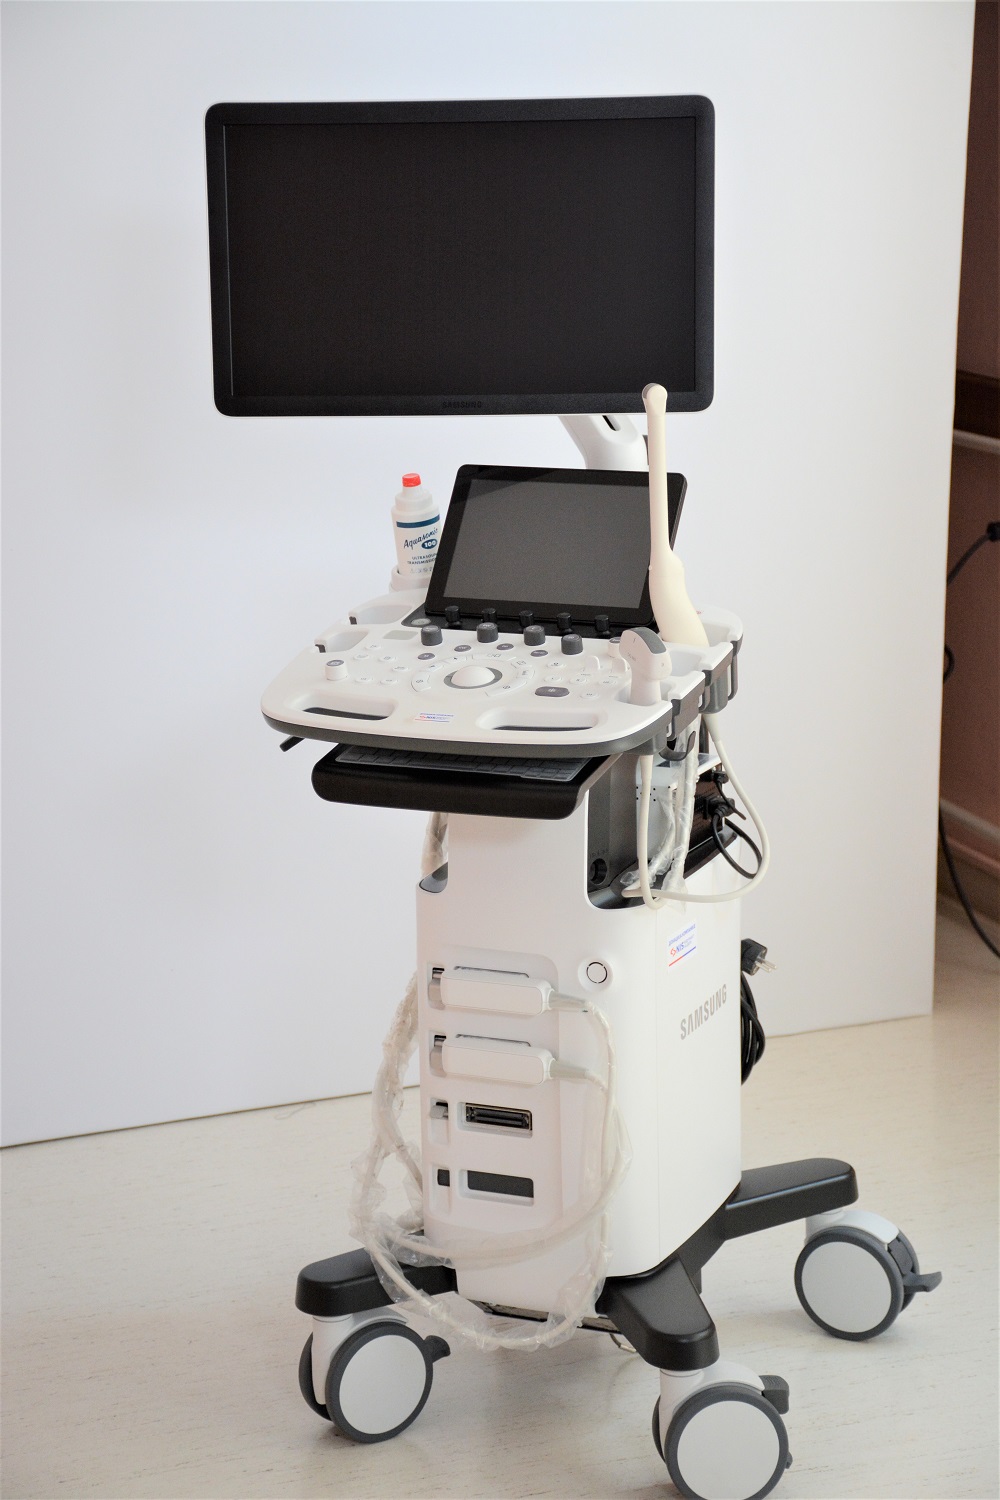 ultrazvučni aparat-nis-srbobran-donacija 